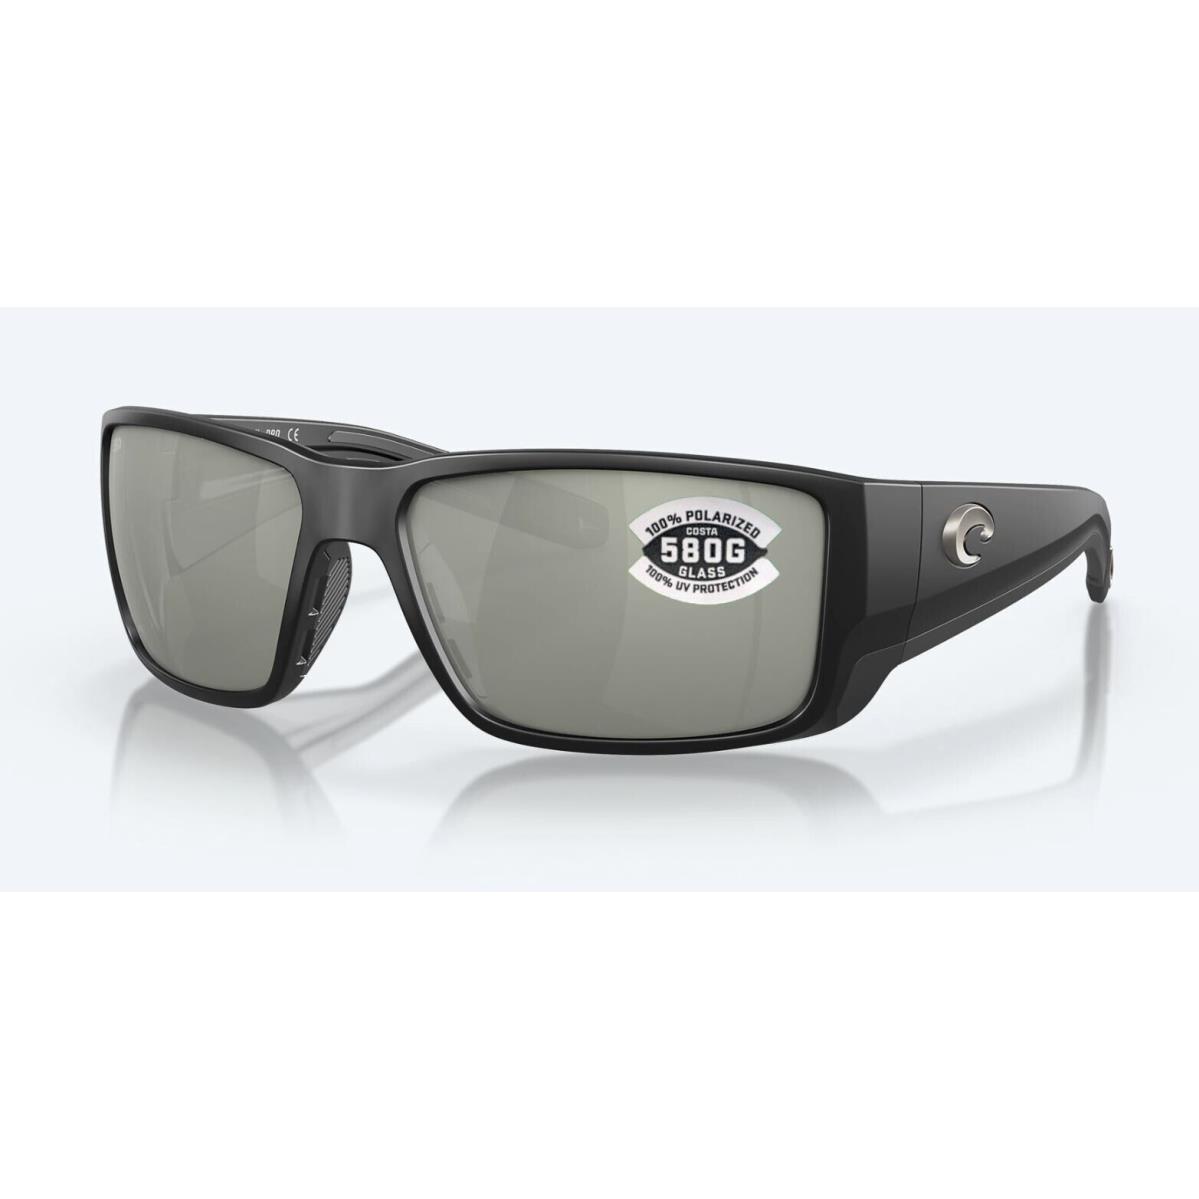 Costa Del Mar Blackfin Pro Matte Black / Gray Silver Mirror Glass 580G